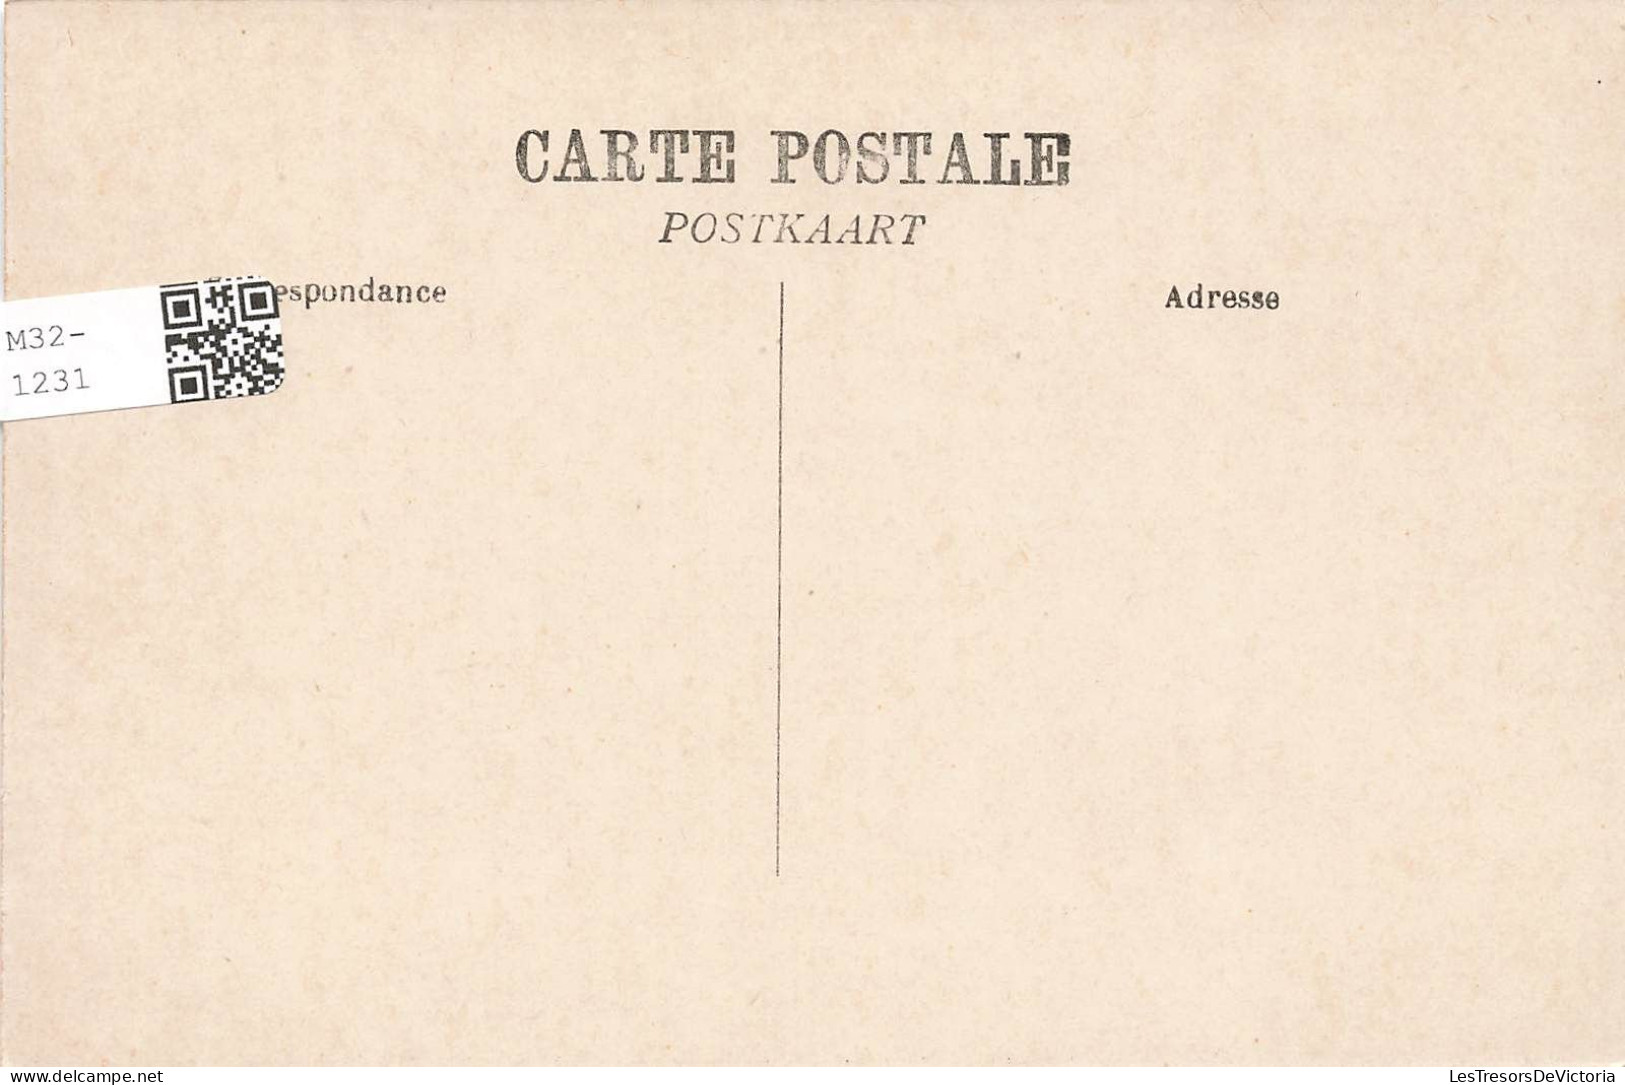 BELGIQUE - Gand - Exposition Internationale 1913 - Le Pavillon De La Ville D'Anvers - Carte Postale Ancienne - Gent